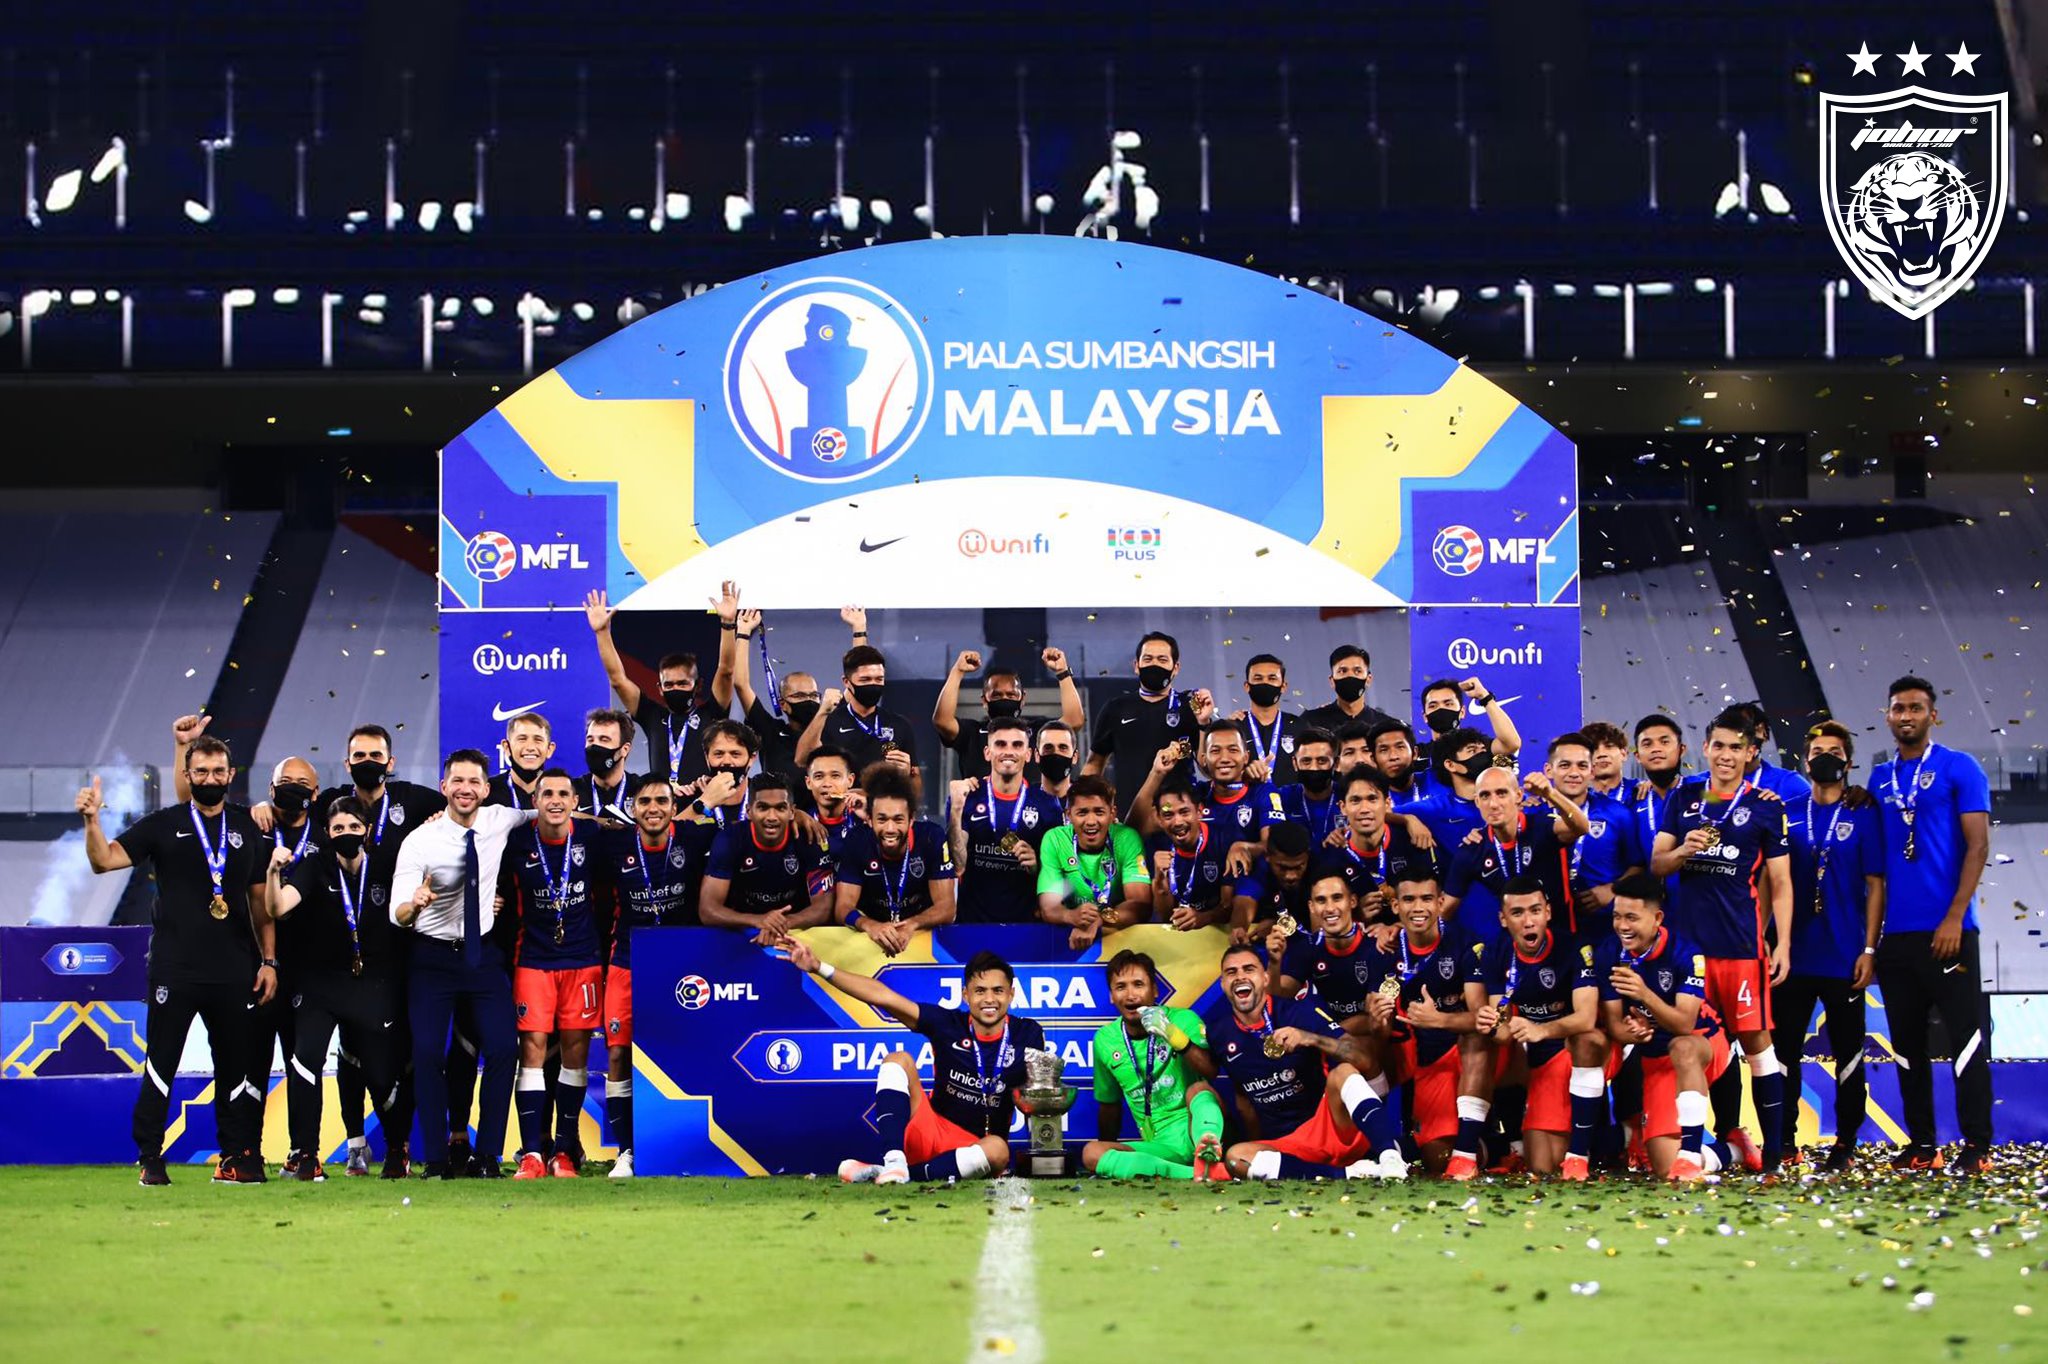 JDT Juara Piala Sumbangsih 2021 Kedah 5 perkara